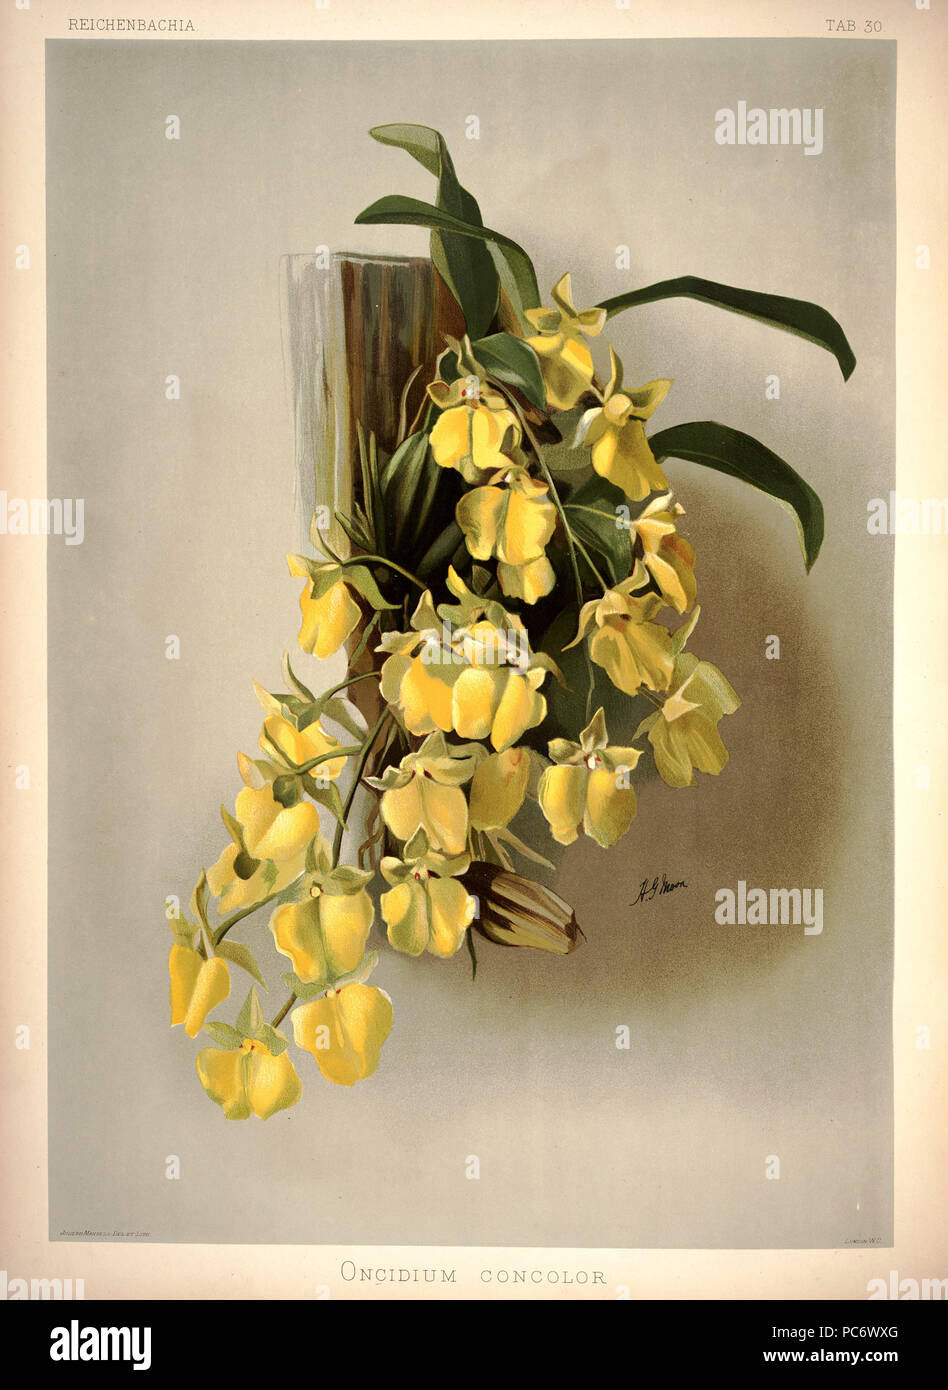 220 Frederick Sander - Reichenbachia I plate 30 (1888) - Oncidium concolor Stock Photo